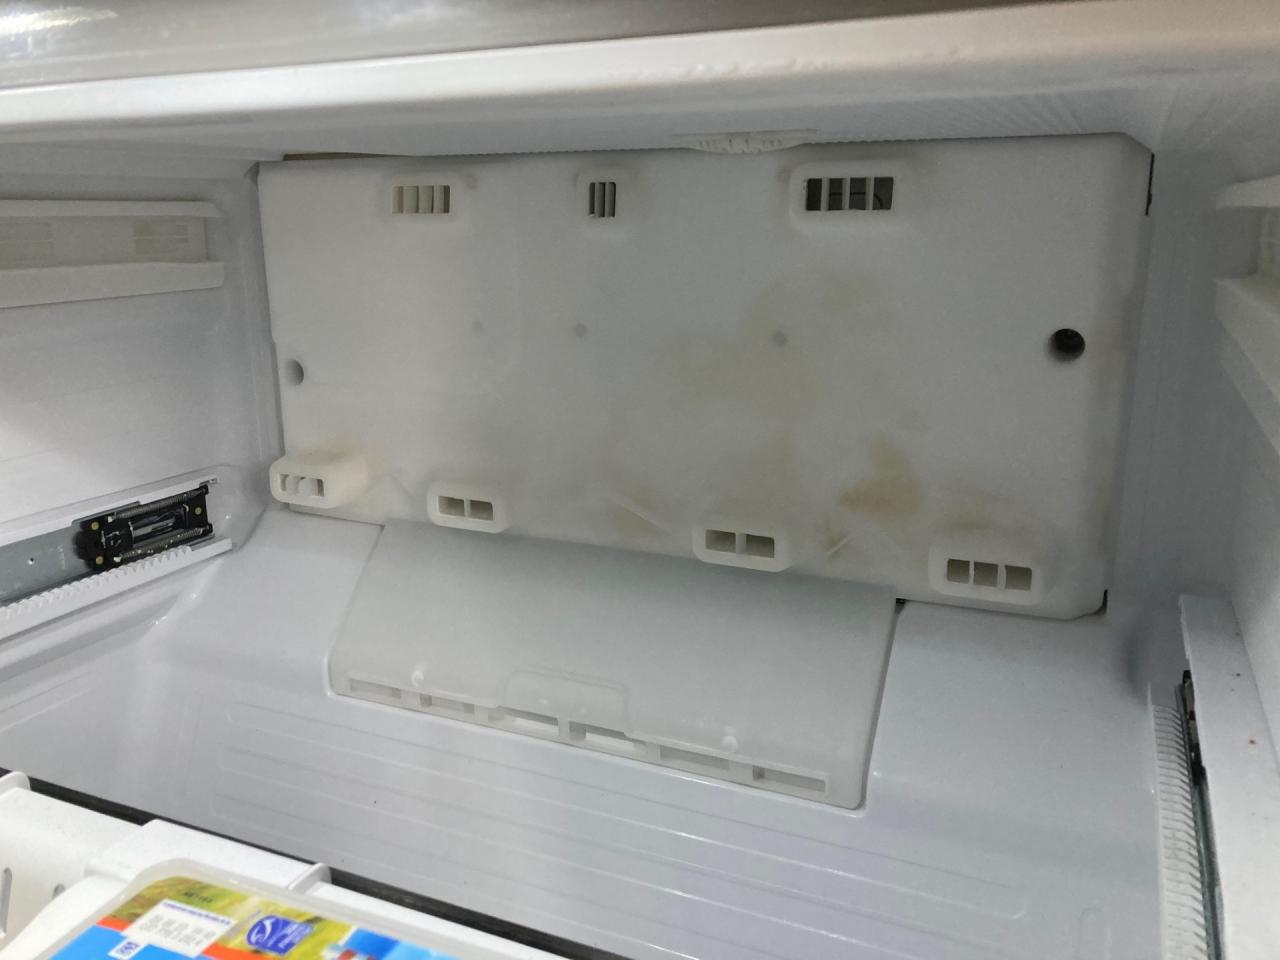 Comment réinitialiser le voyant du filtre de mon réfrigérateur